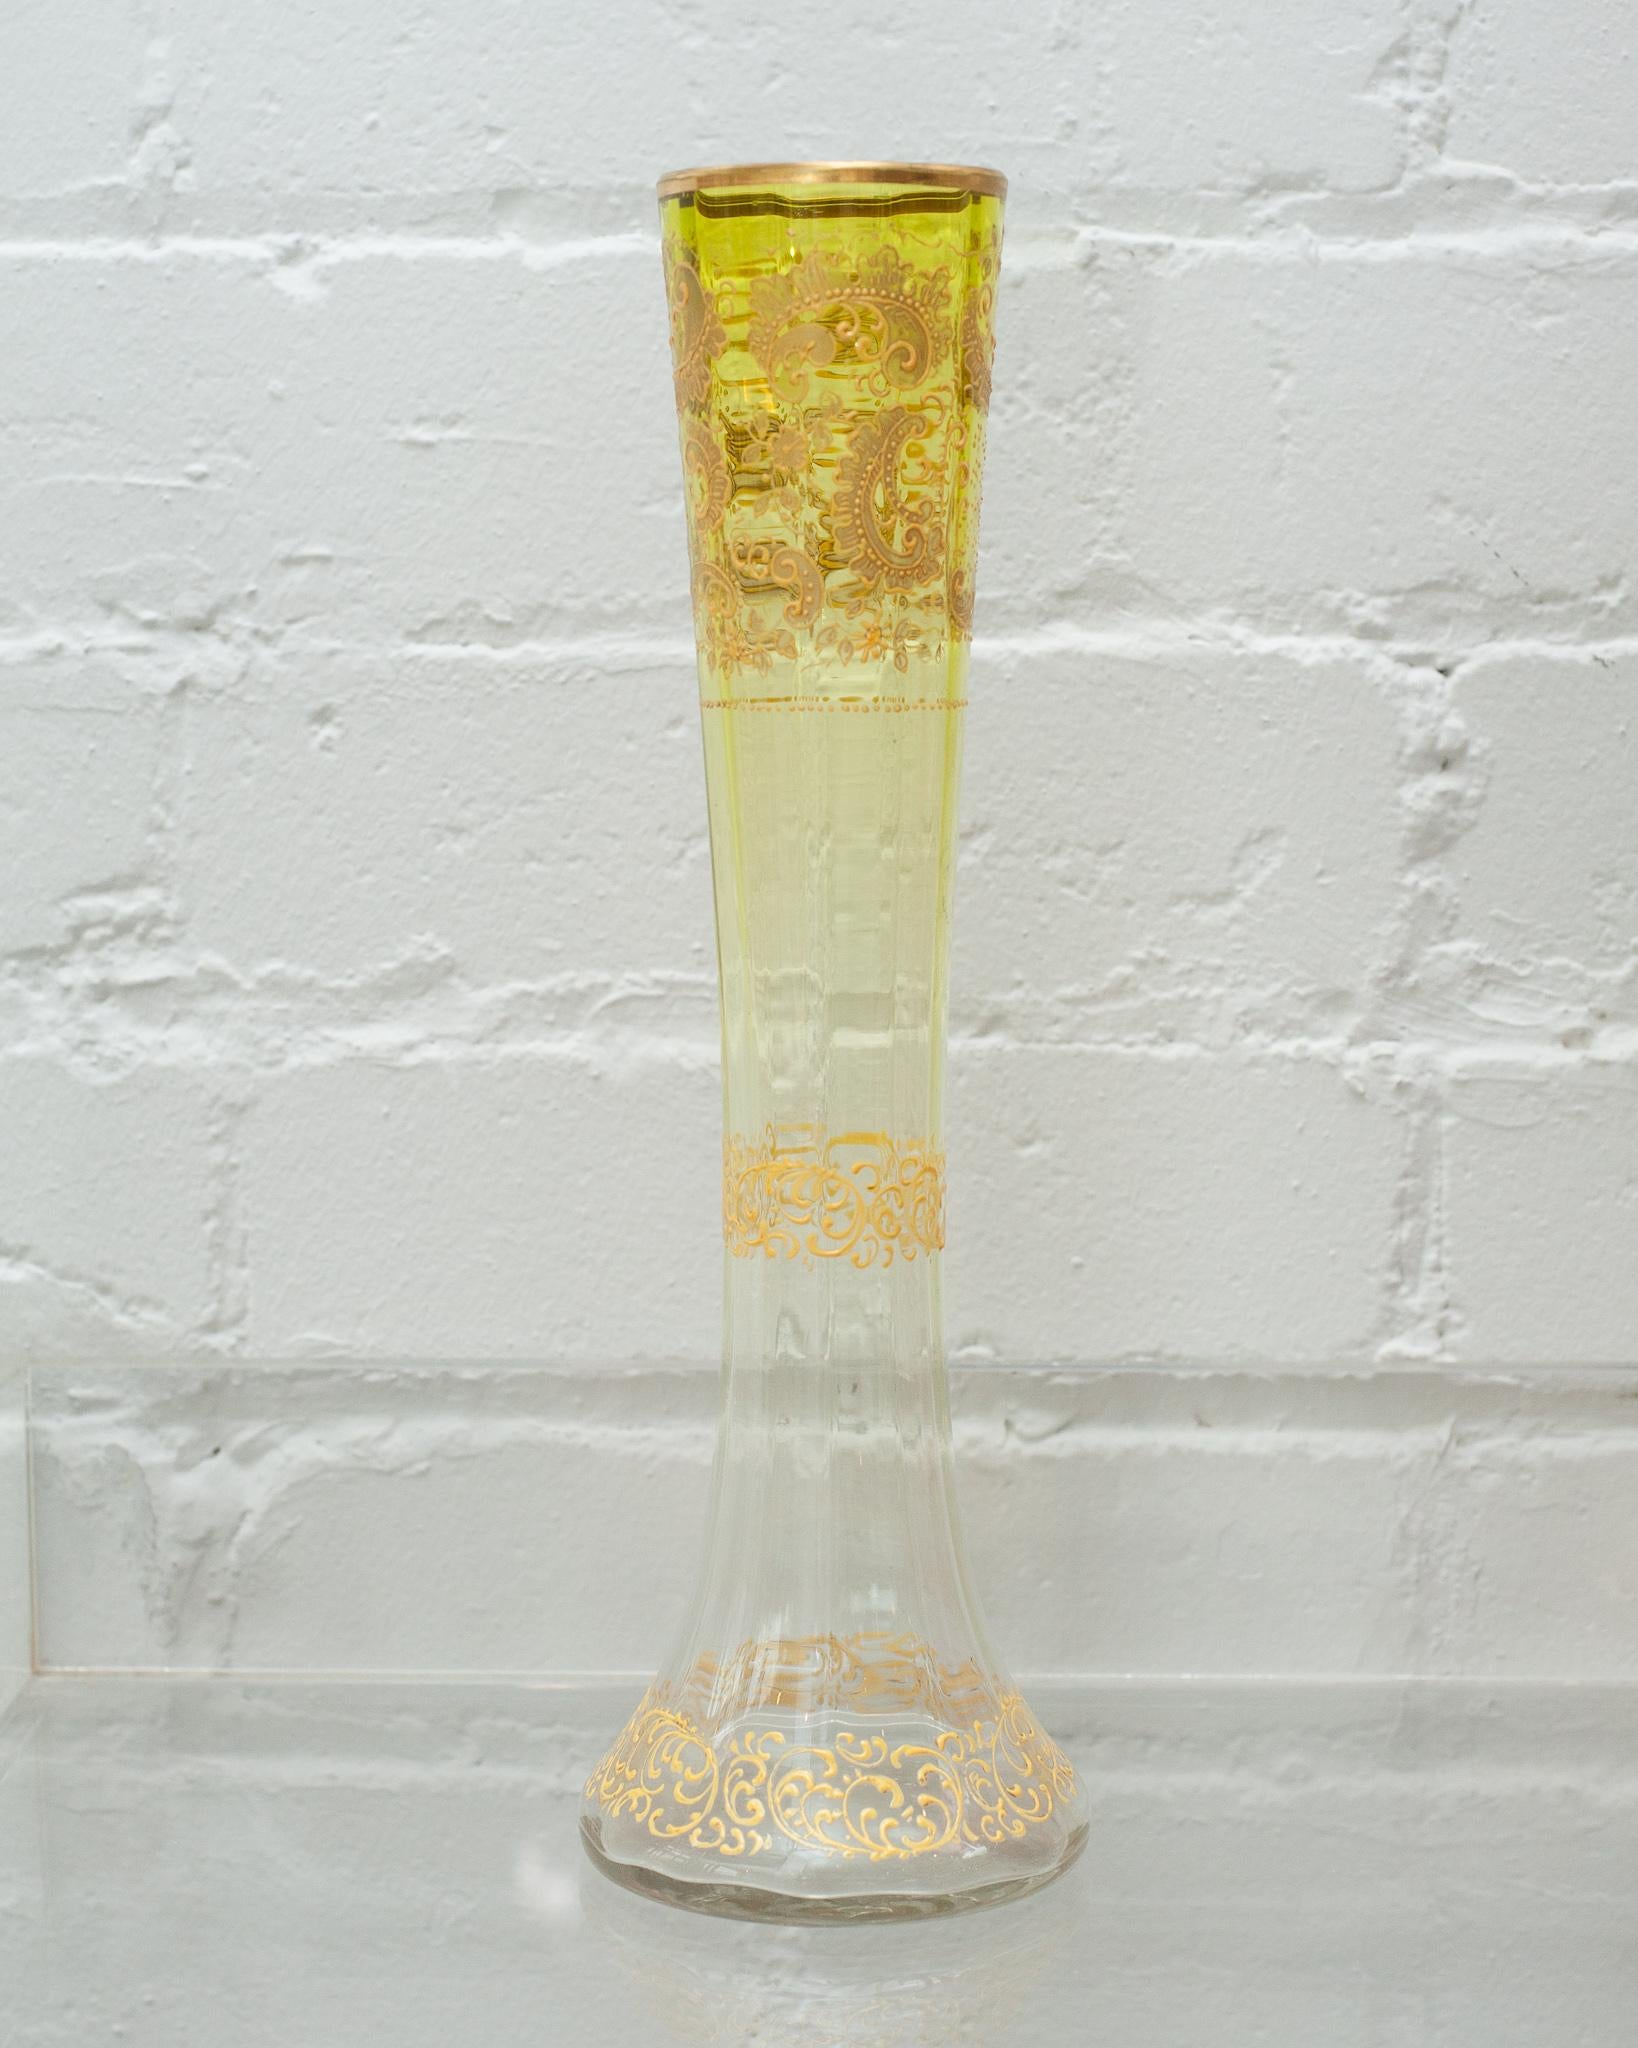 Magnifique vase évasé antique de Moser en cristal jaune à clair délavé, avec des détails dorés. Très belle réalisation et en excellent état pour son âge. Un bel exemple de l'artisanat bohémien du début du siècle.